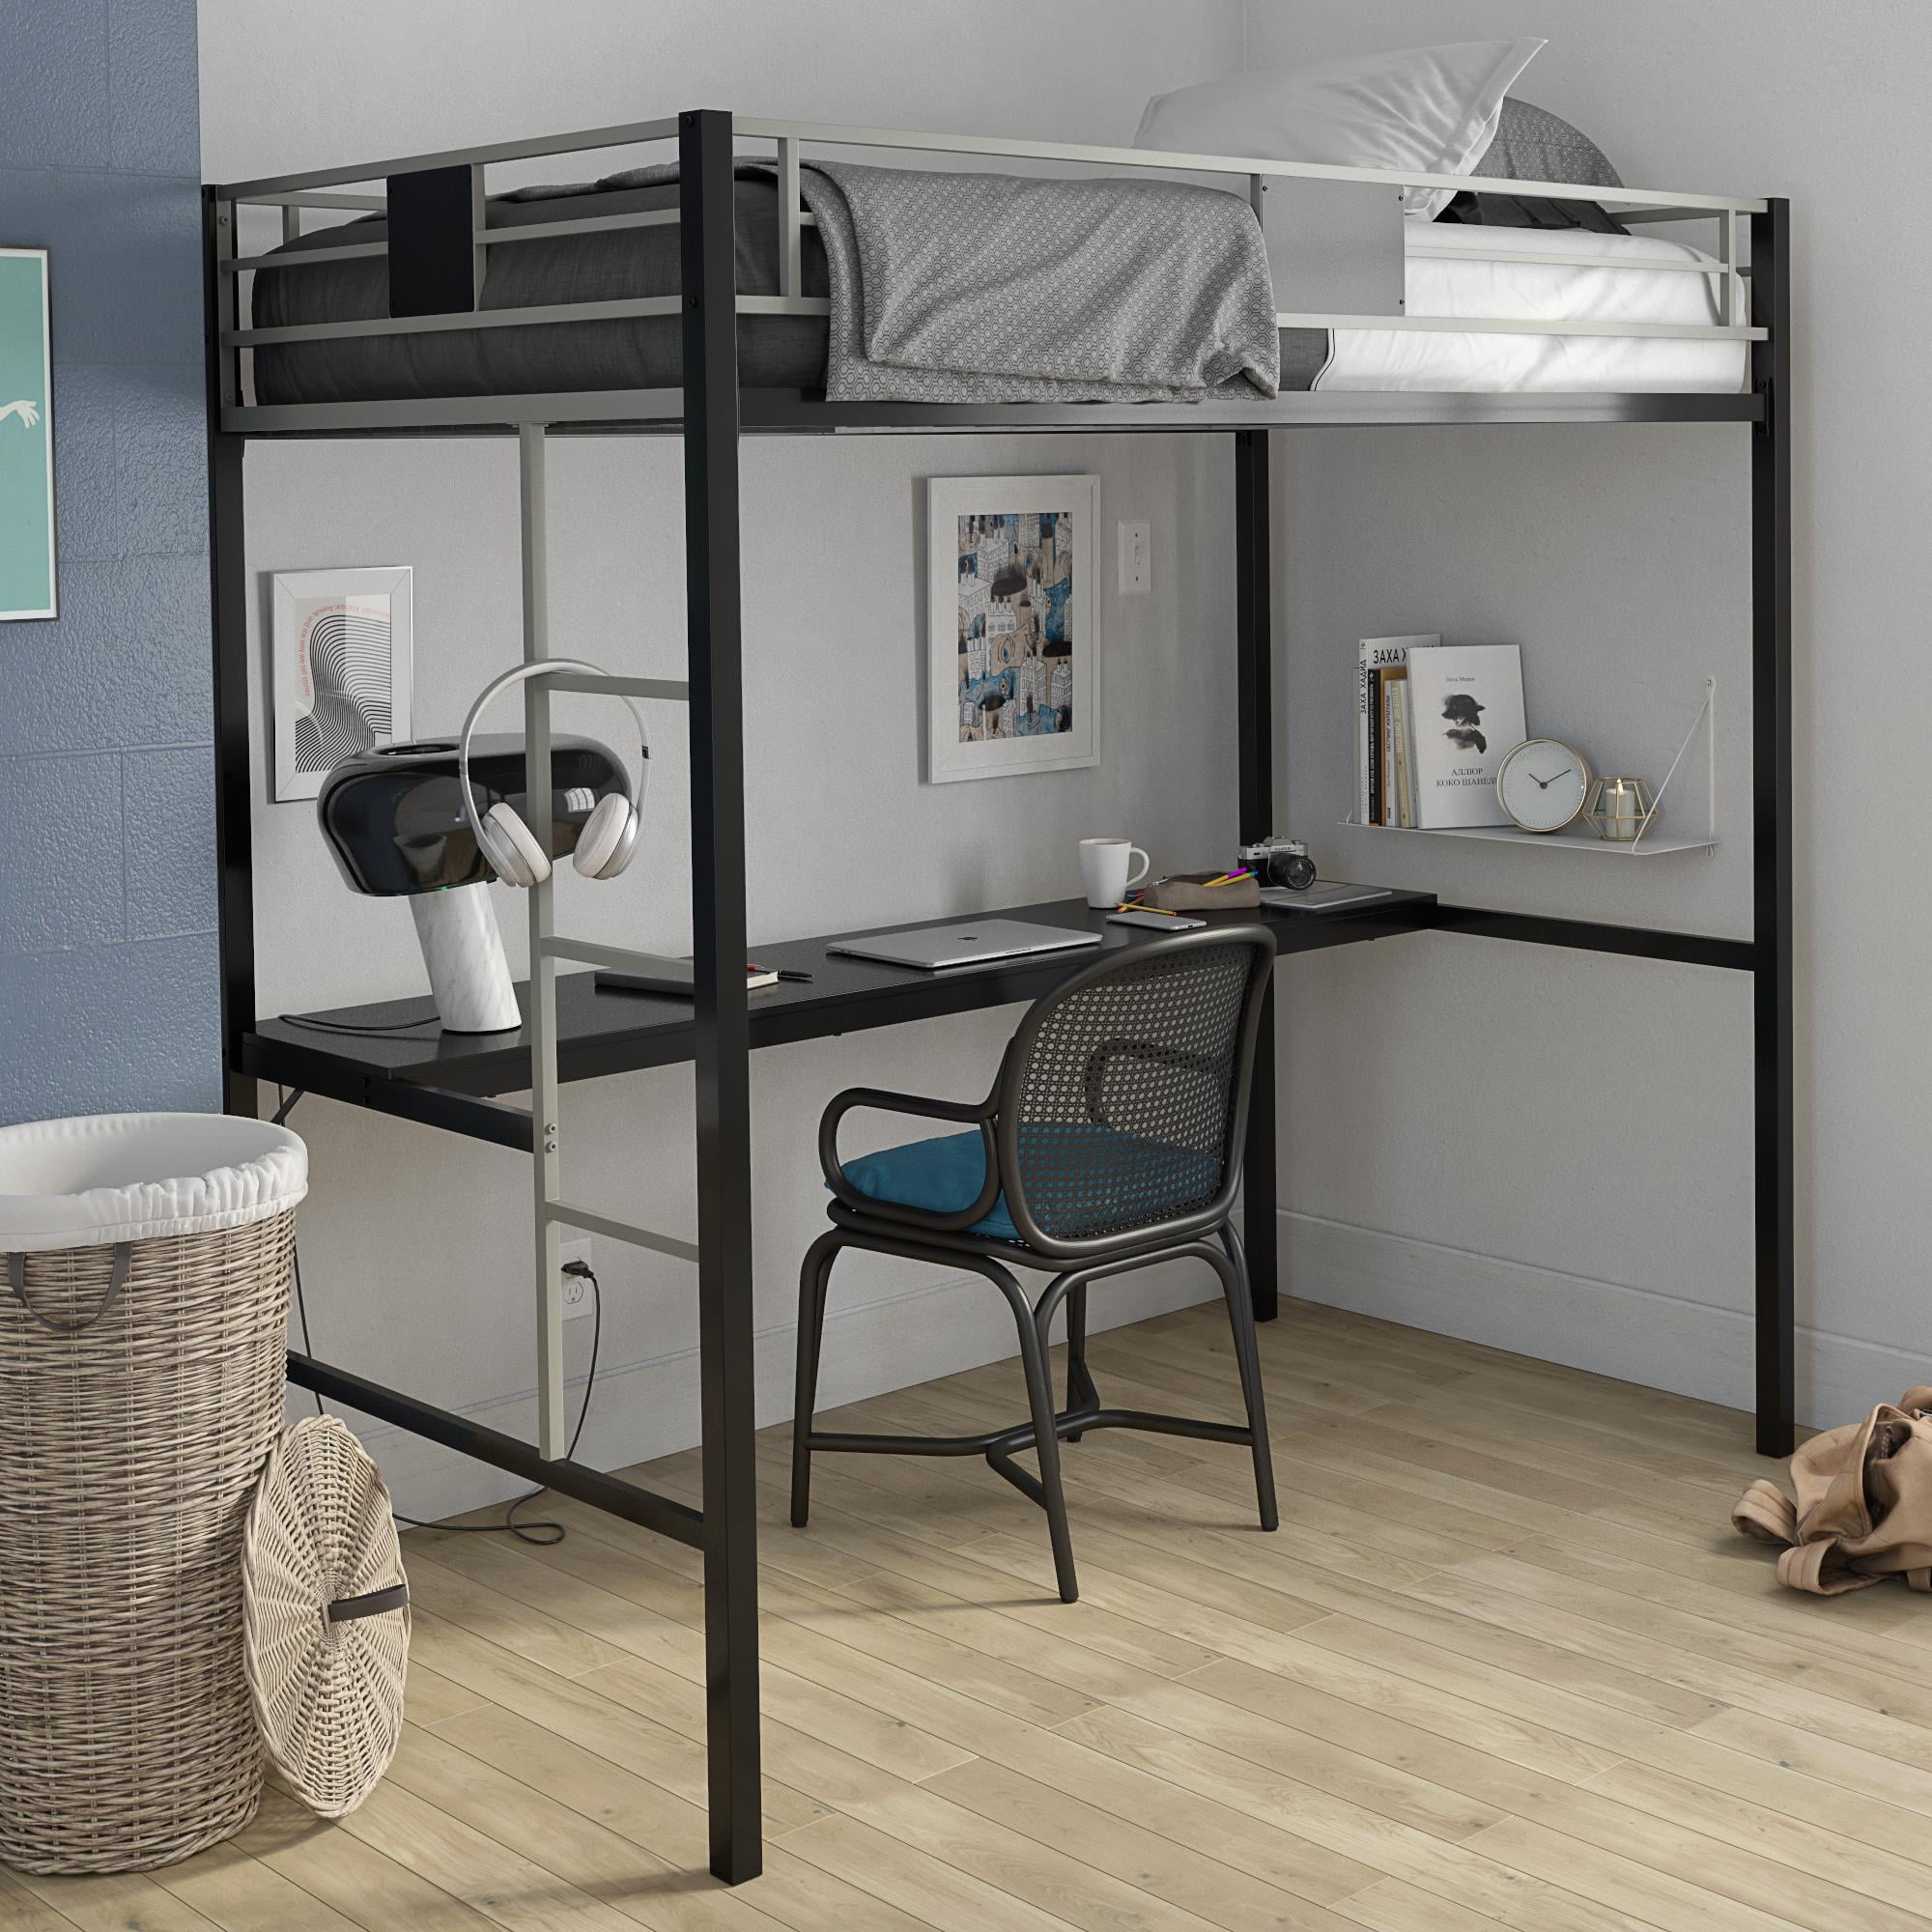 Premium Metal Loft Bed Black, We Furniture Loft Bunk Bed Full Metal Black